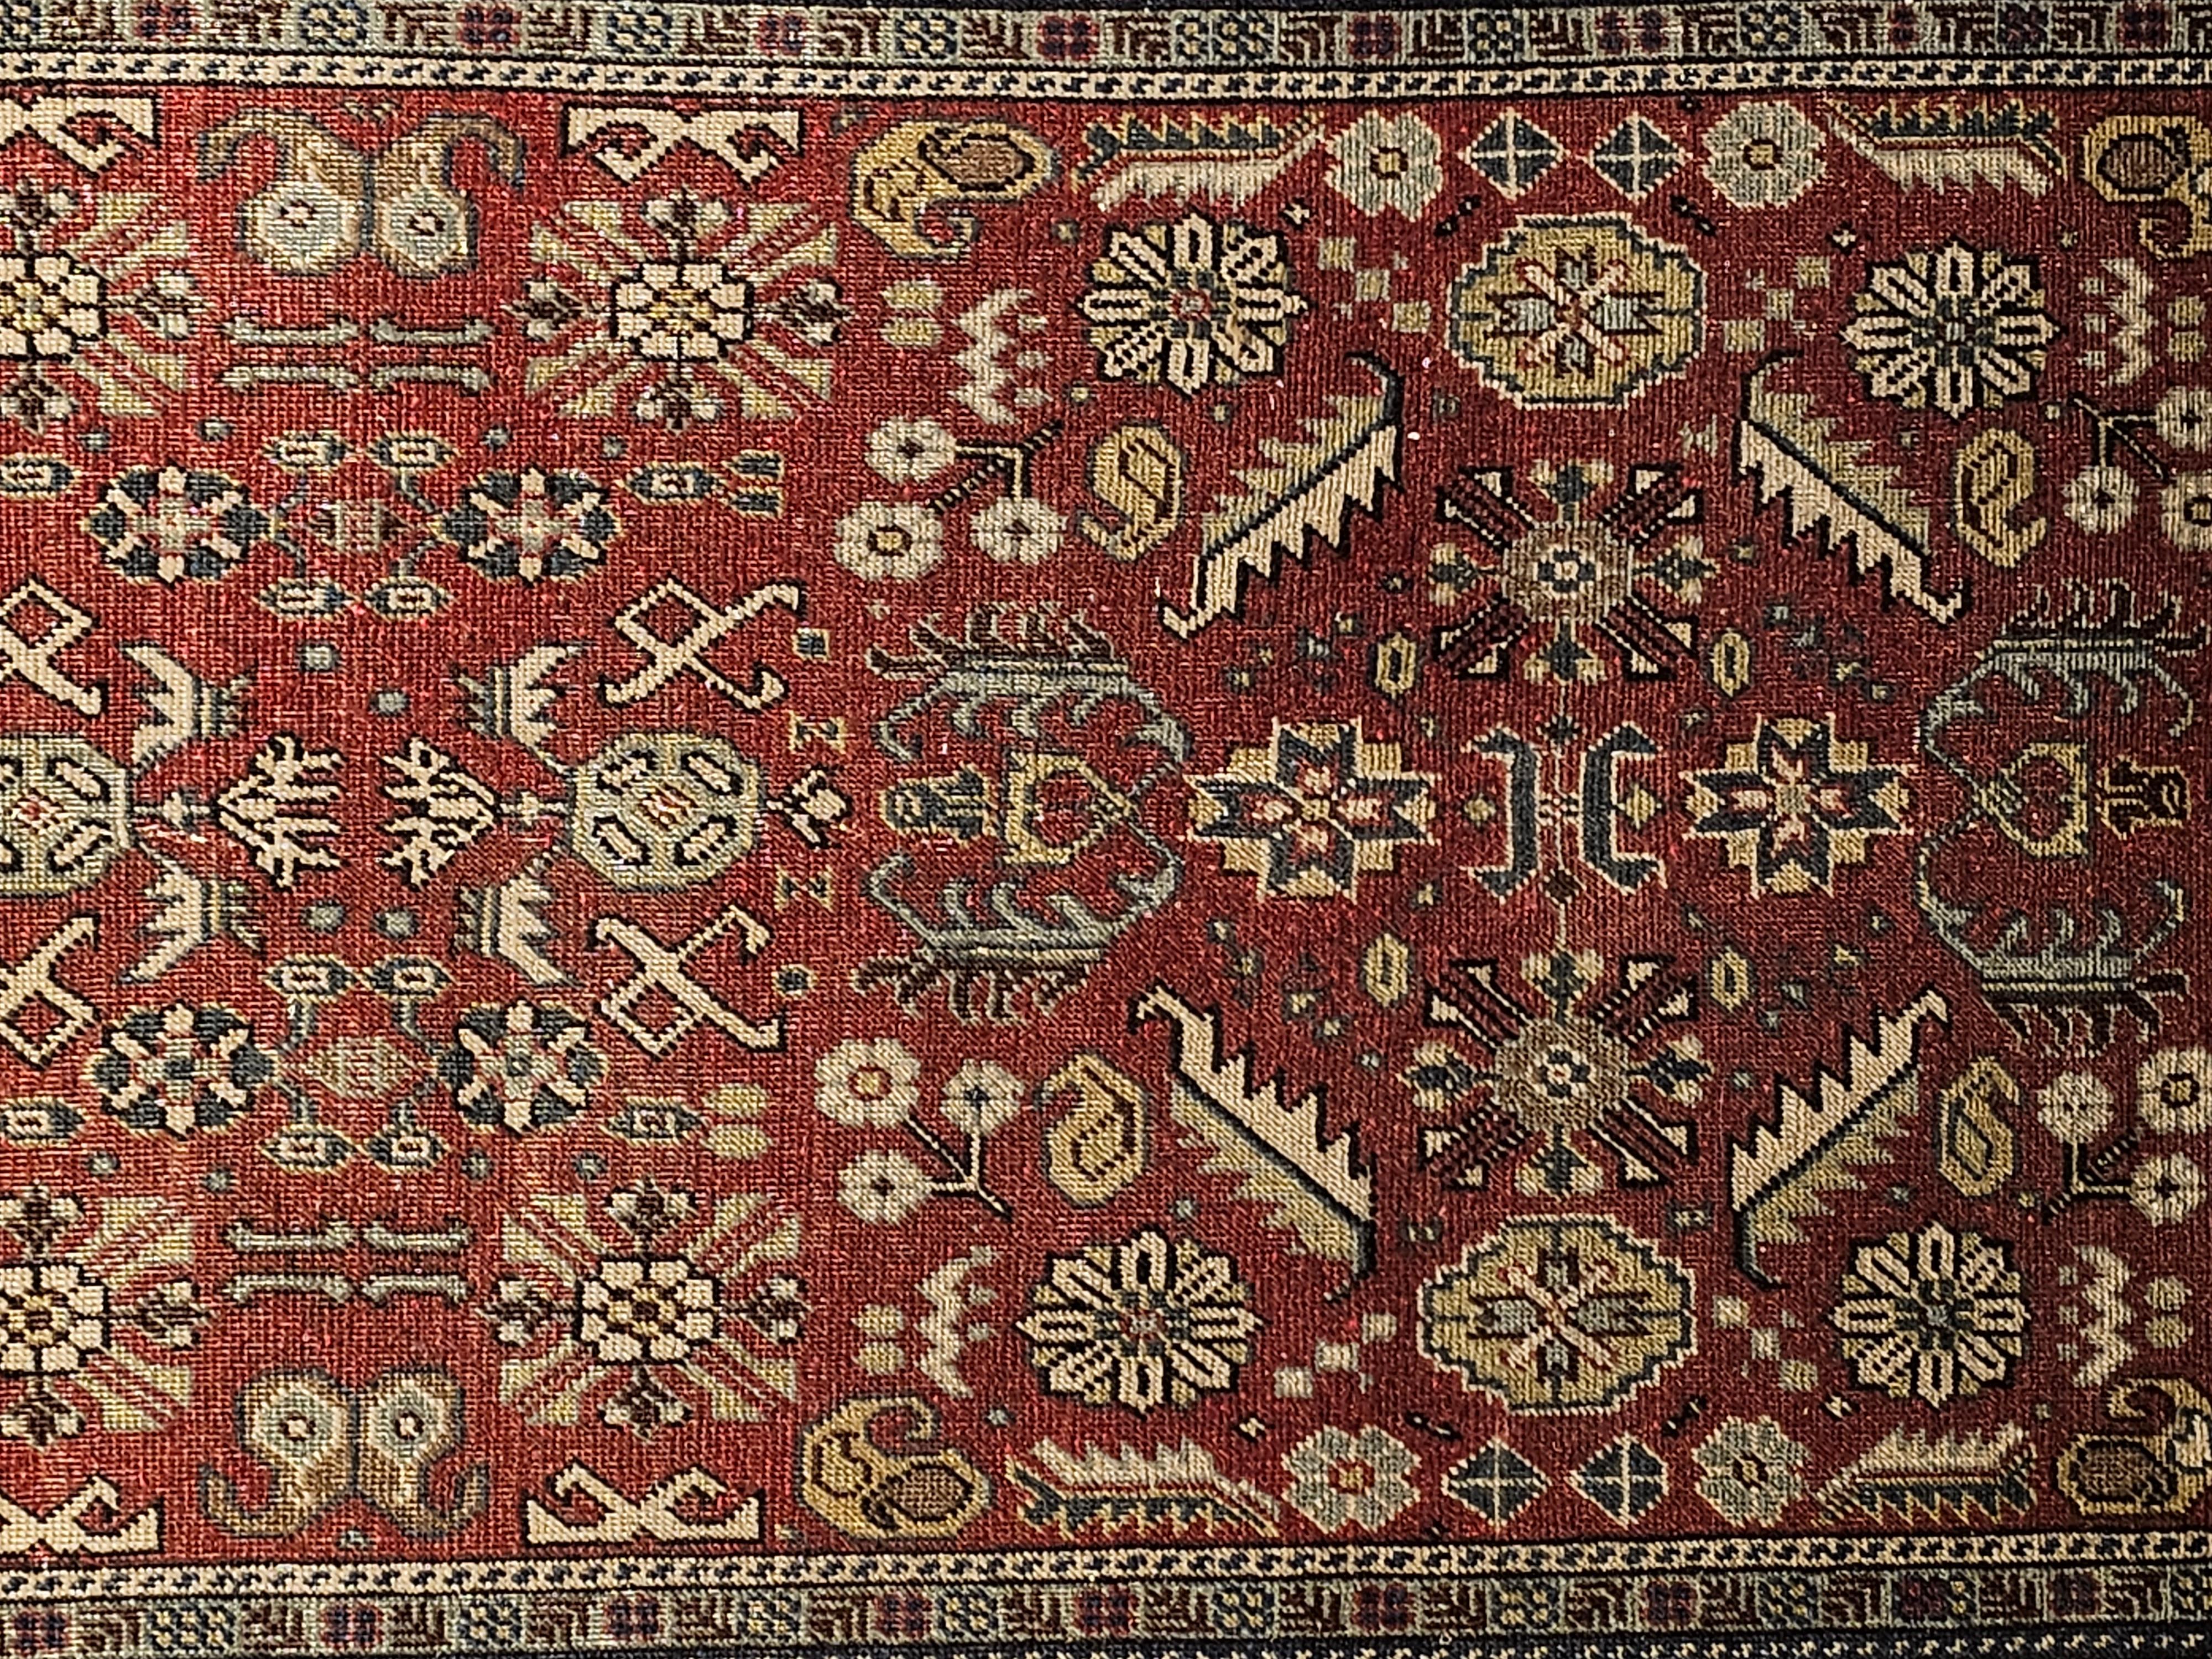 Vintage Khotan Teppich mit geometrischem Muster in den Farben Ziegelrot, Gelb und Elfenbein.  Der Khotan-Teppich wurde von Hand gewebt und stammt aus Zentralasien, etwa aus dem ersten Viertel des 19. Jahrhunderts.  Der Teppich hat ein Allover-Muster